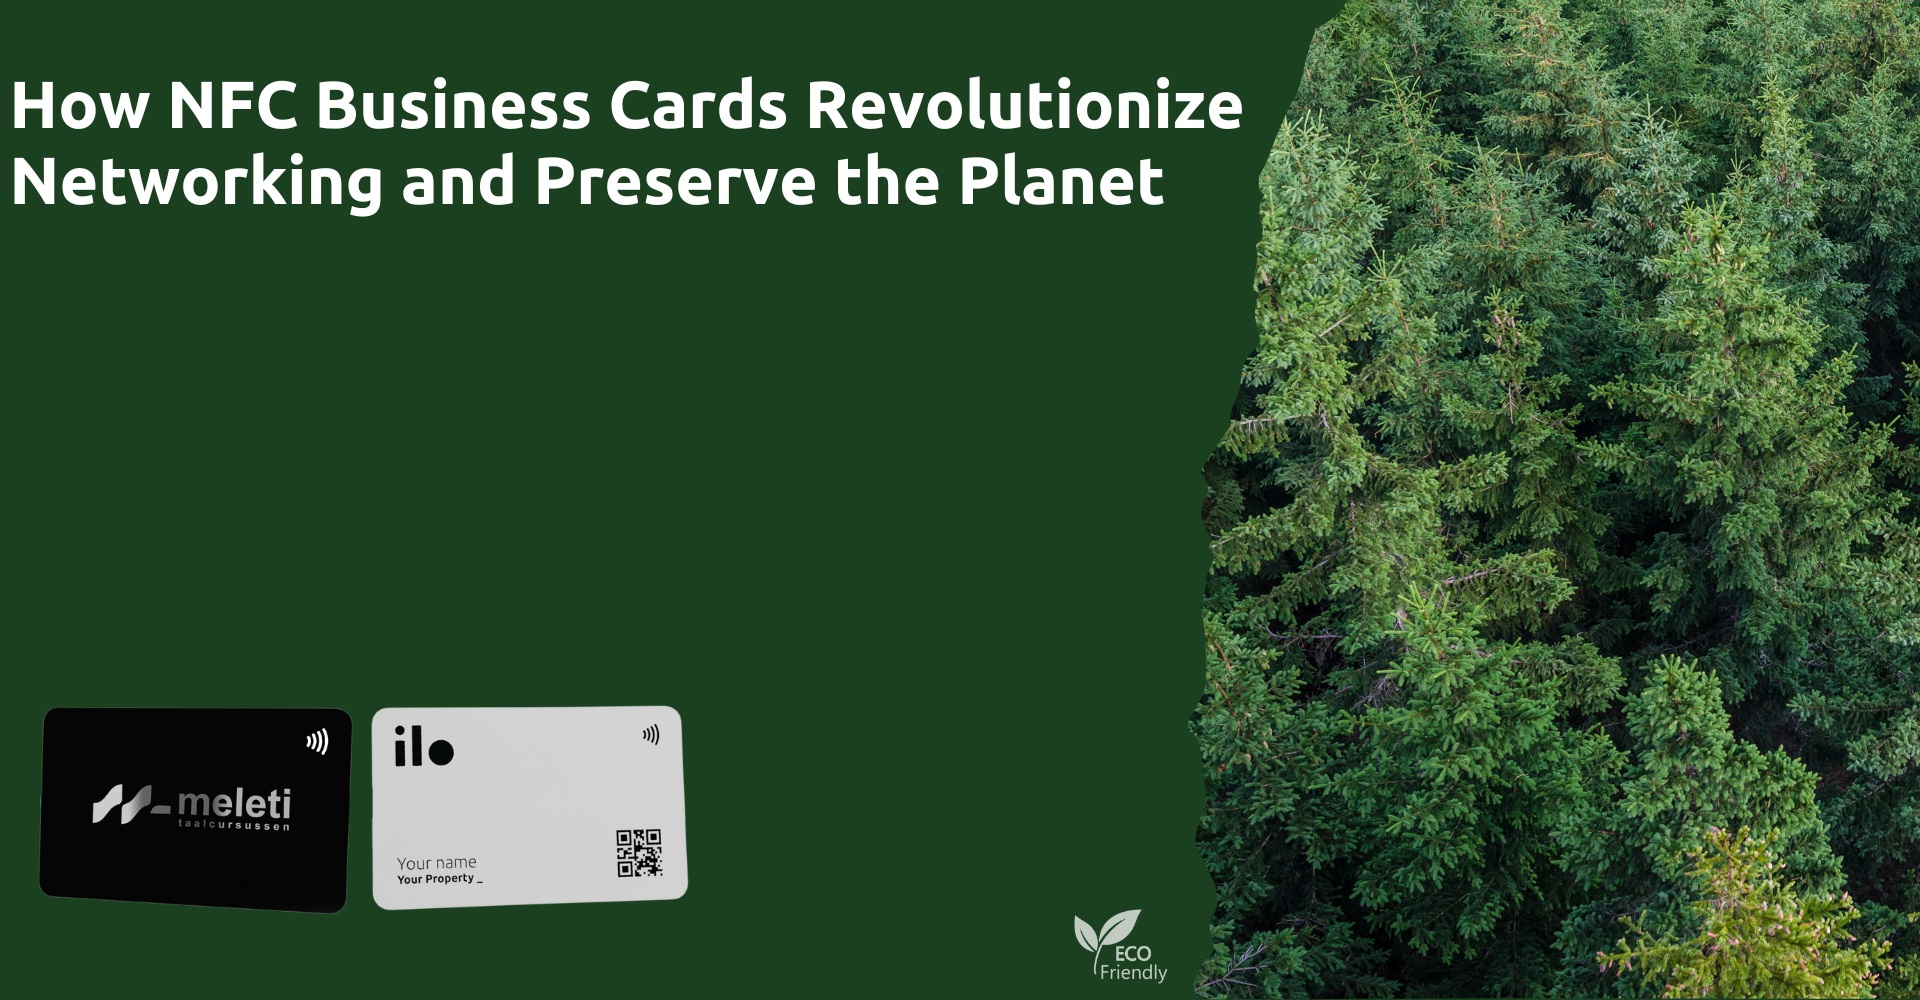 Πώς οι επαγγελματικές κάρτες NFC φέρνουν επανάσταση στη δικτύωση και βοηθούν τον πλανήτη. NFC Business Cards.